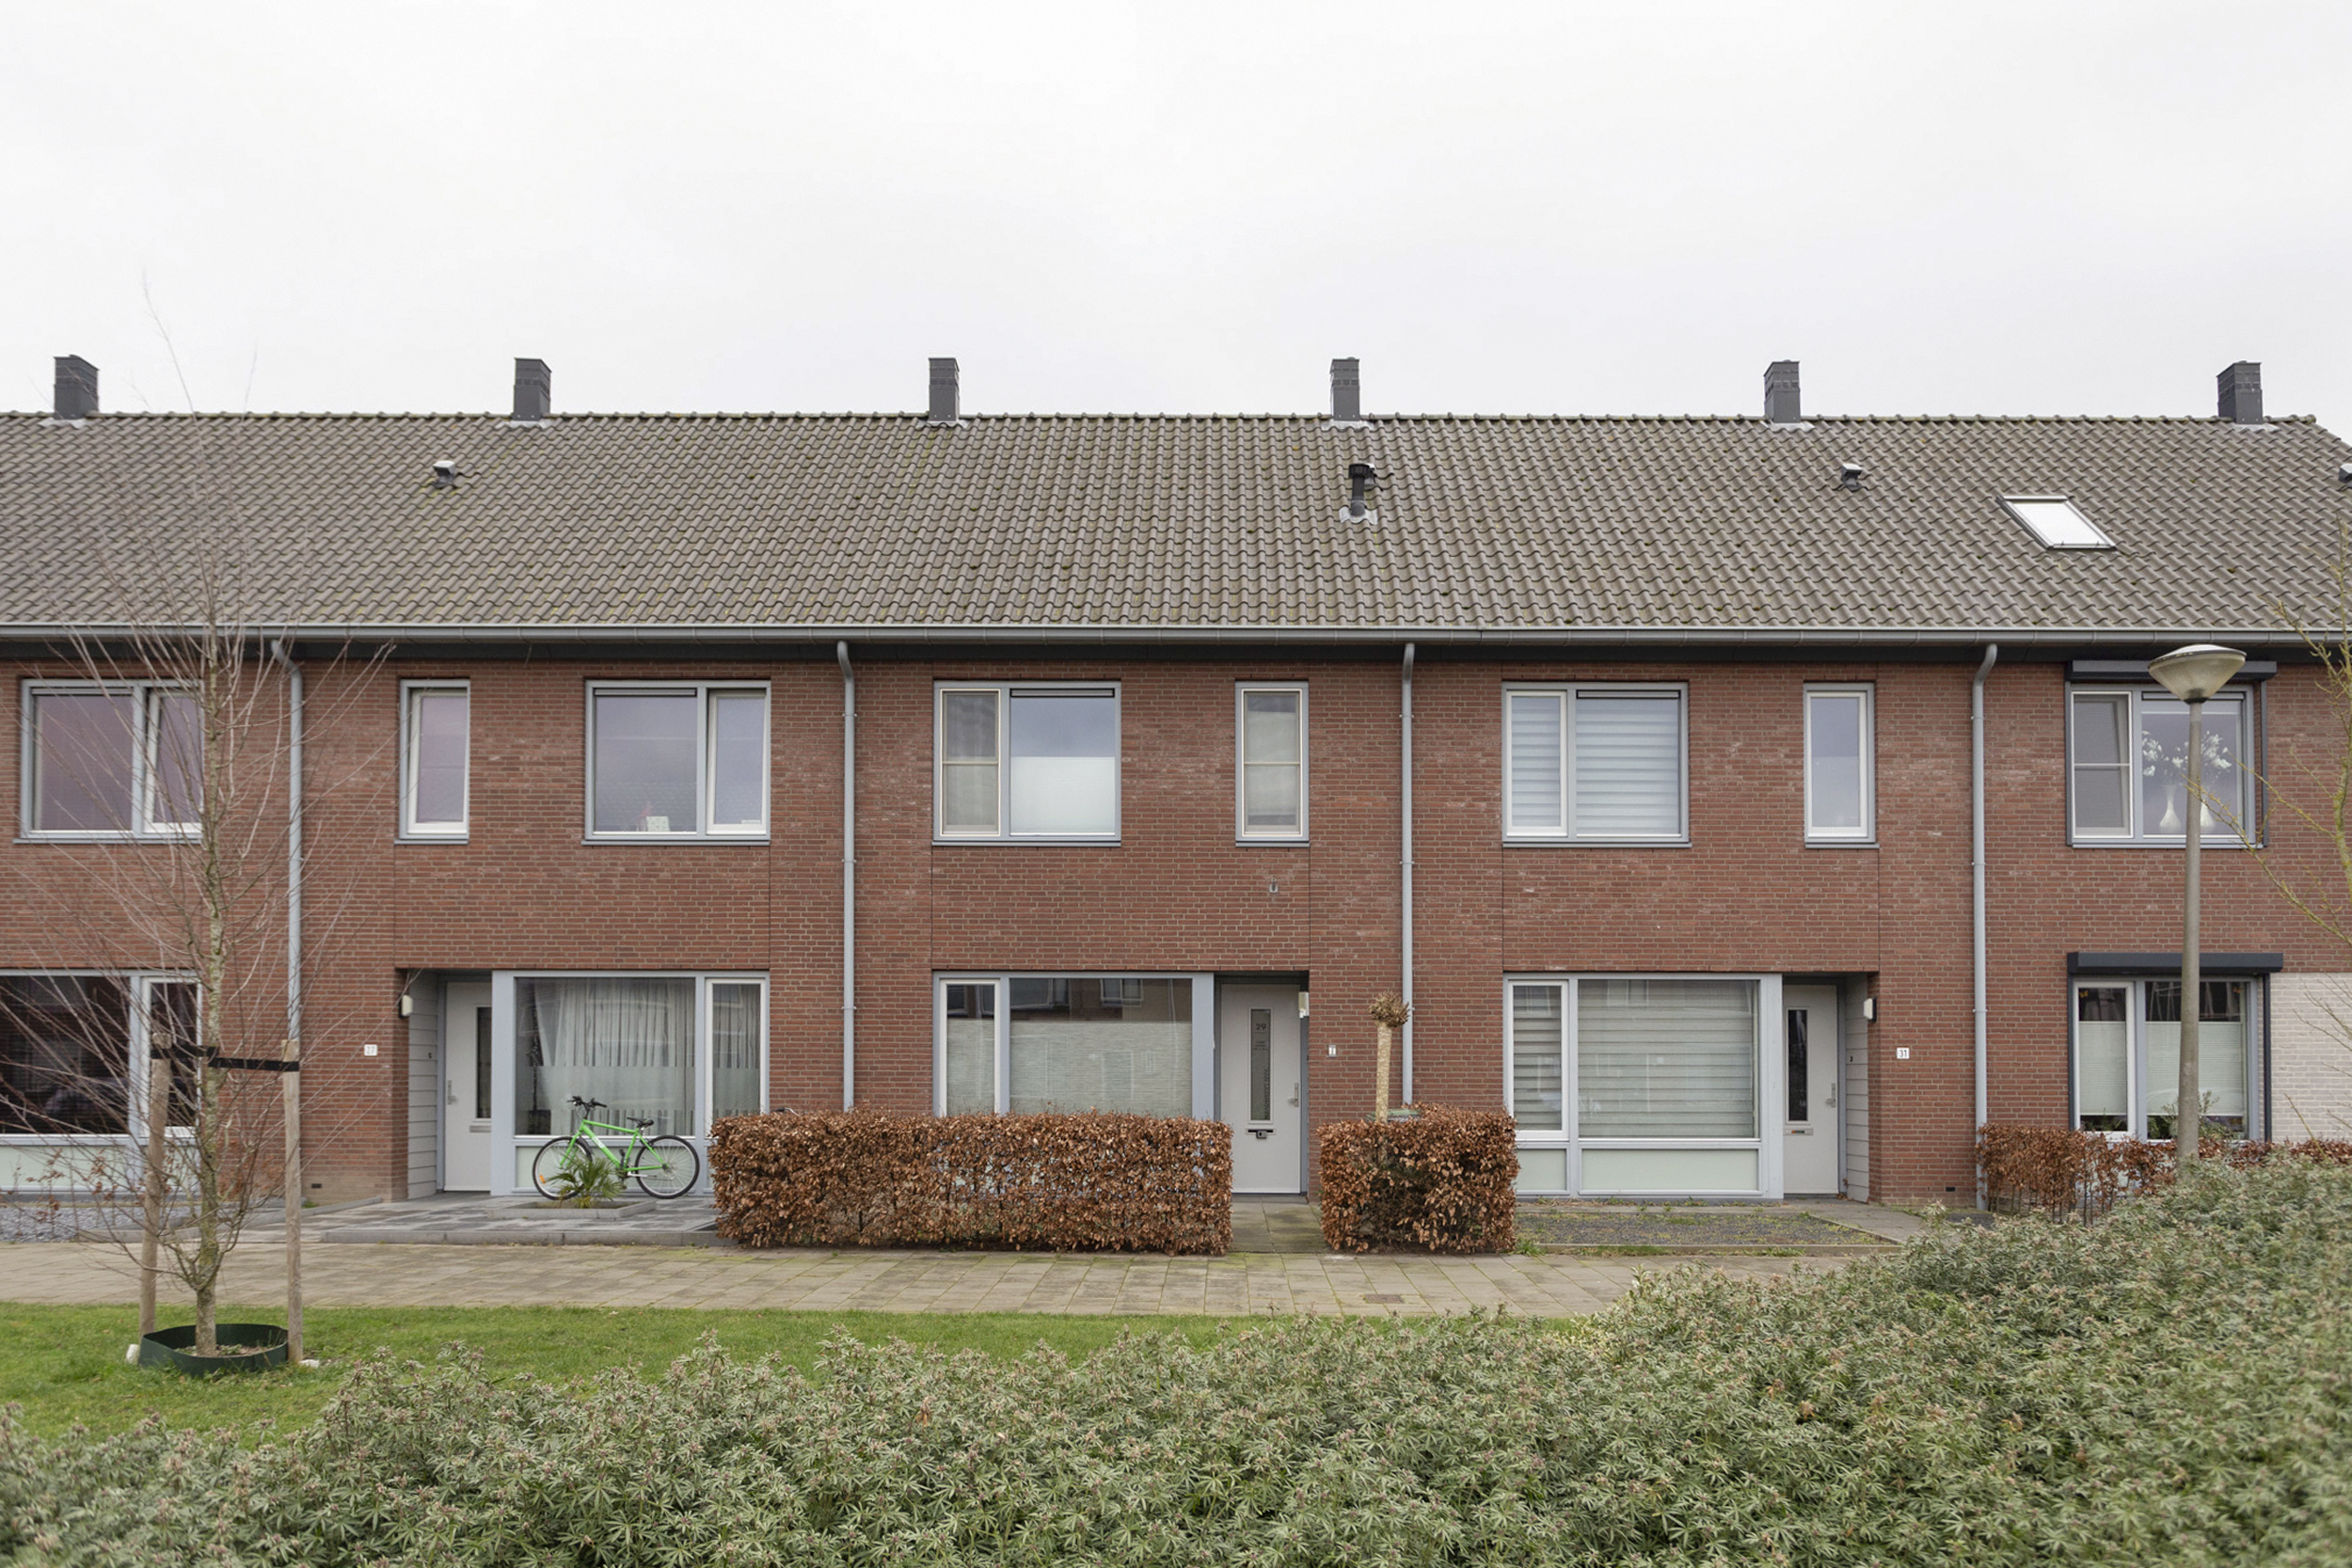 Patrijsstraat 29, 4881 WV Zundert, Nederland